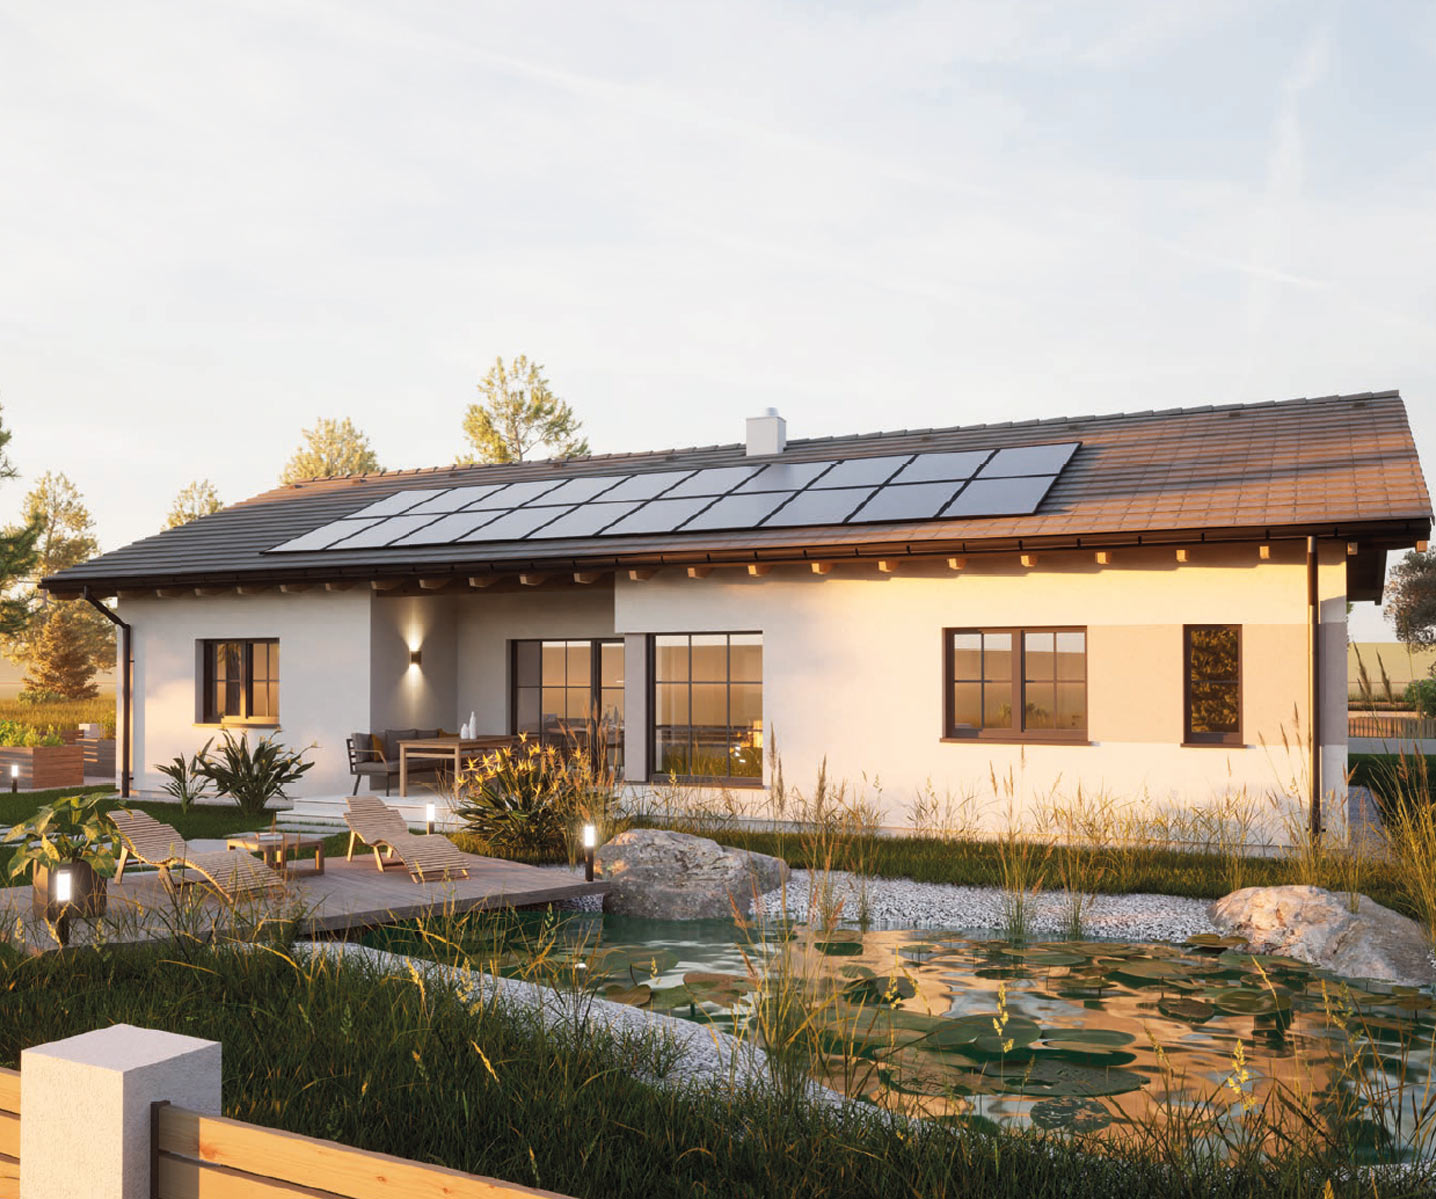 Bungalow mit Photovoltaikanlage und Terrasse bei Abendsonne, Gartenteich im Vordergrund